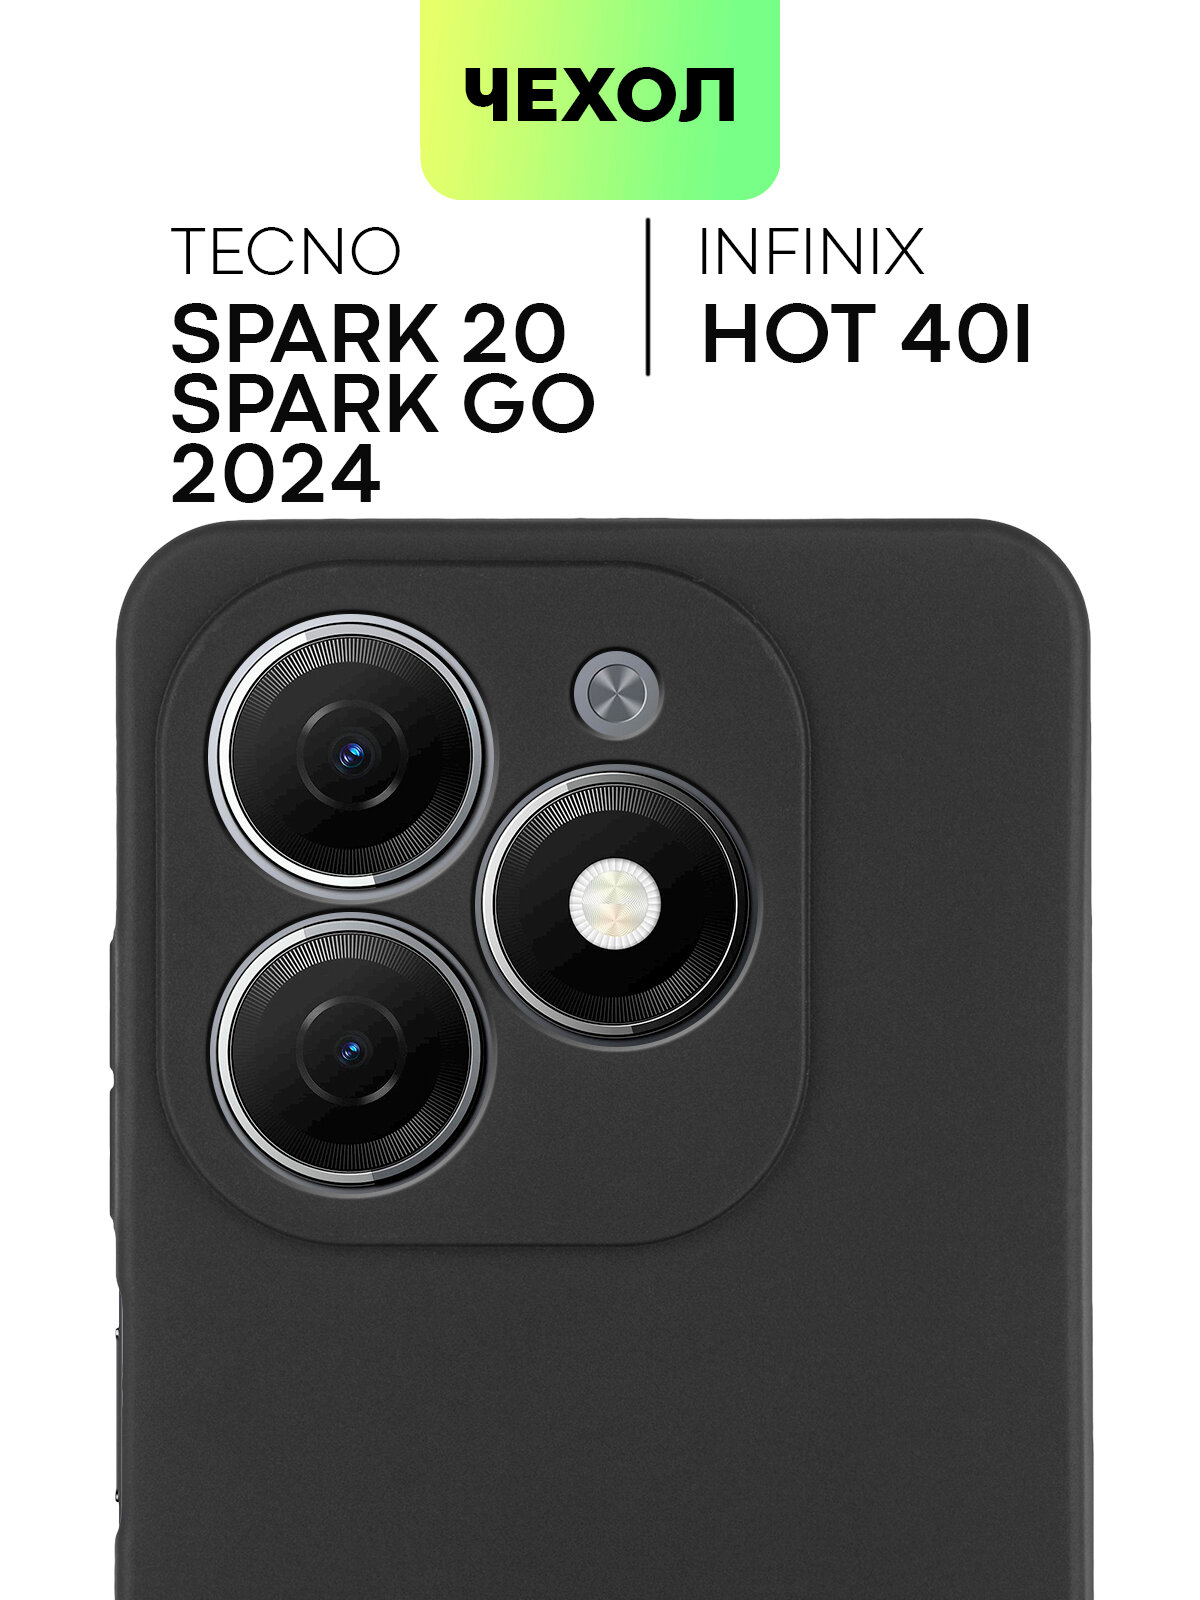 Чехол BROSCORP для TECNO Spark 20 (Техно Спарк 20) тонкий силиконовый чехол с матовым покрытием и защитой модуля камер черный